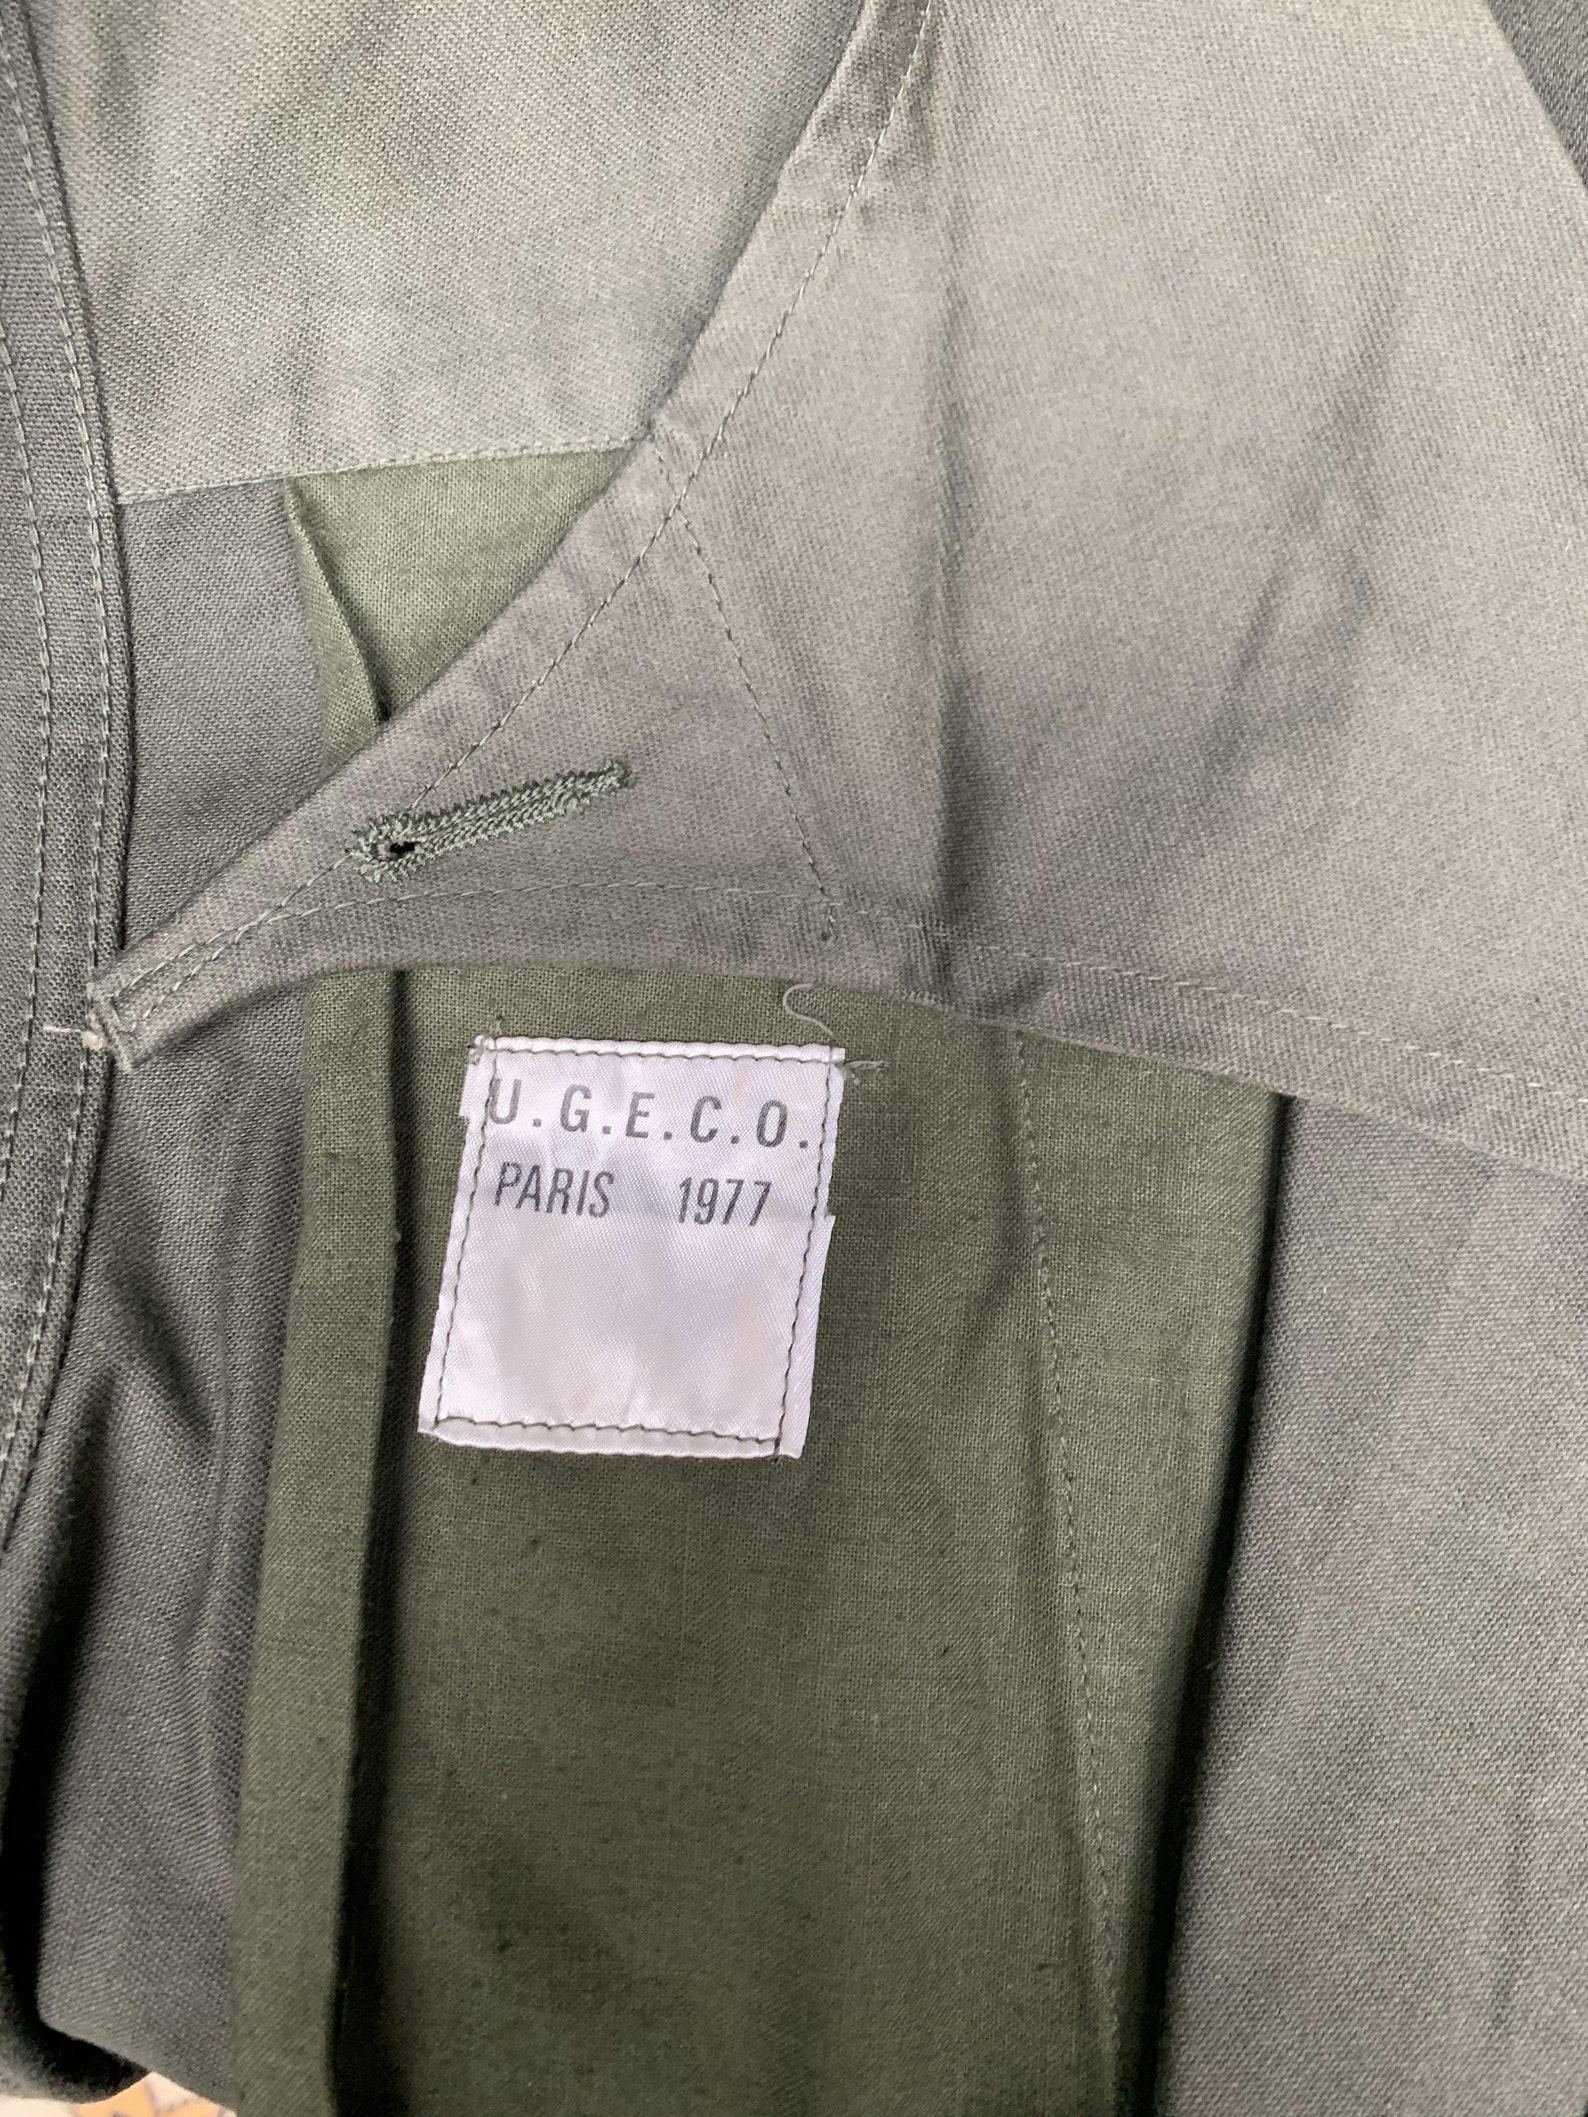 Vintage French Khaki Army Jacket Size 92C UGECO Paris 1977 - Etsy UK